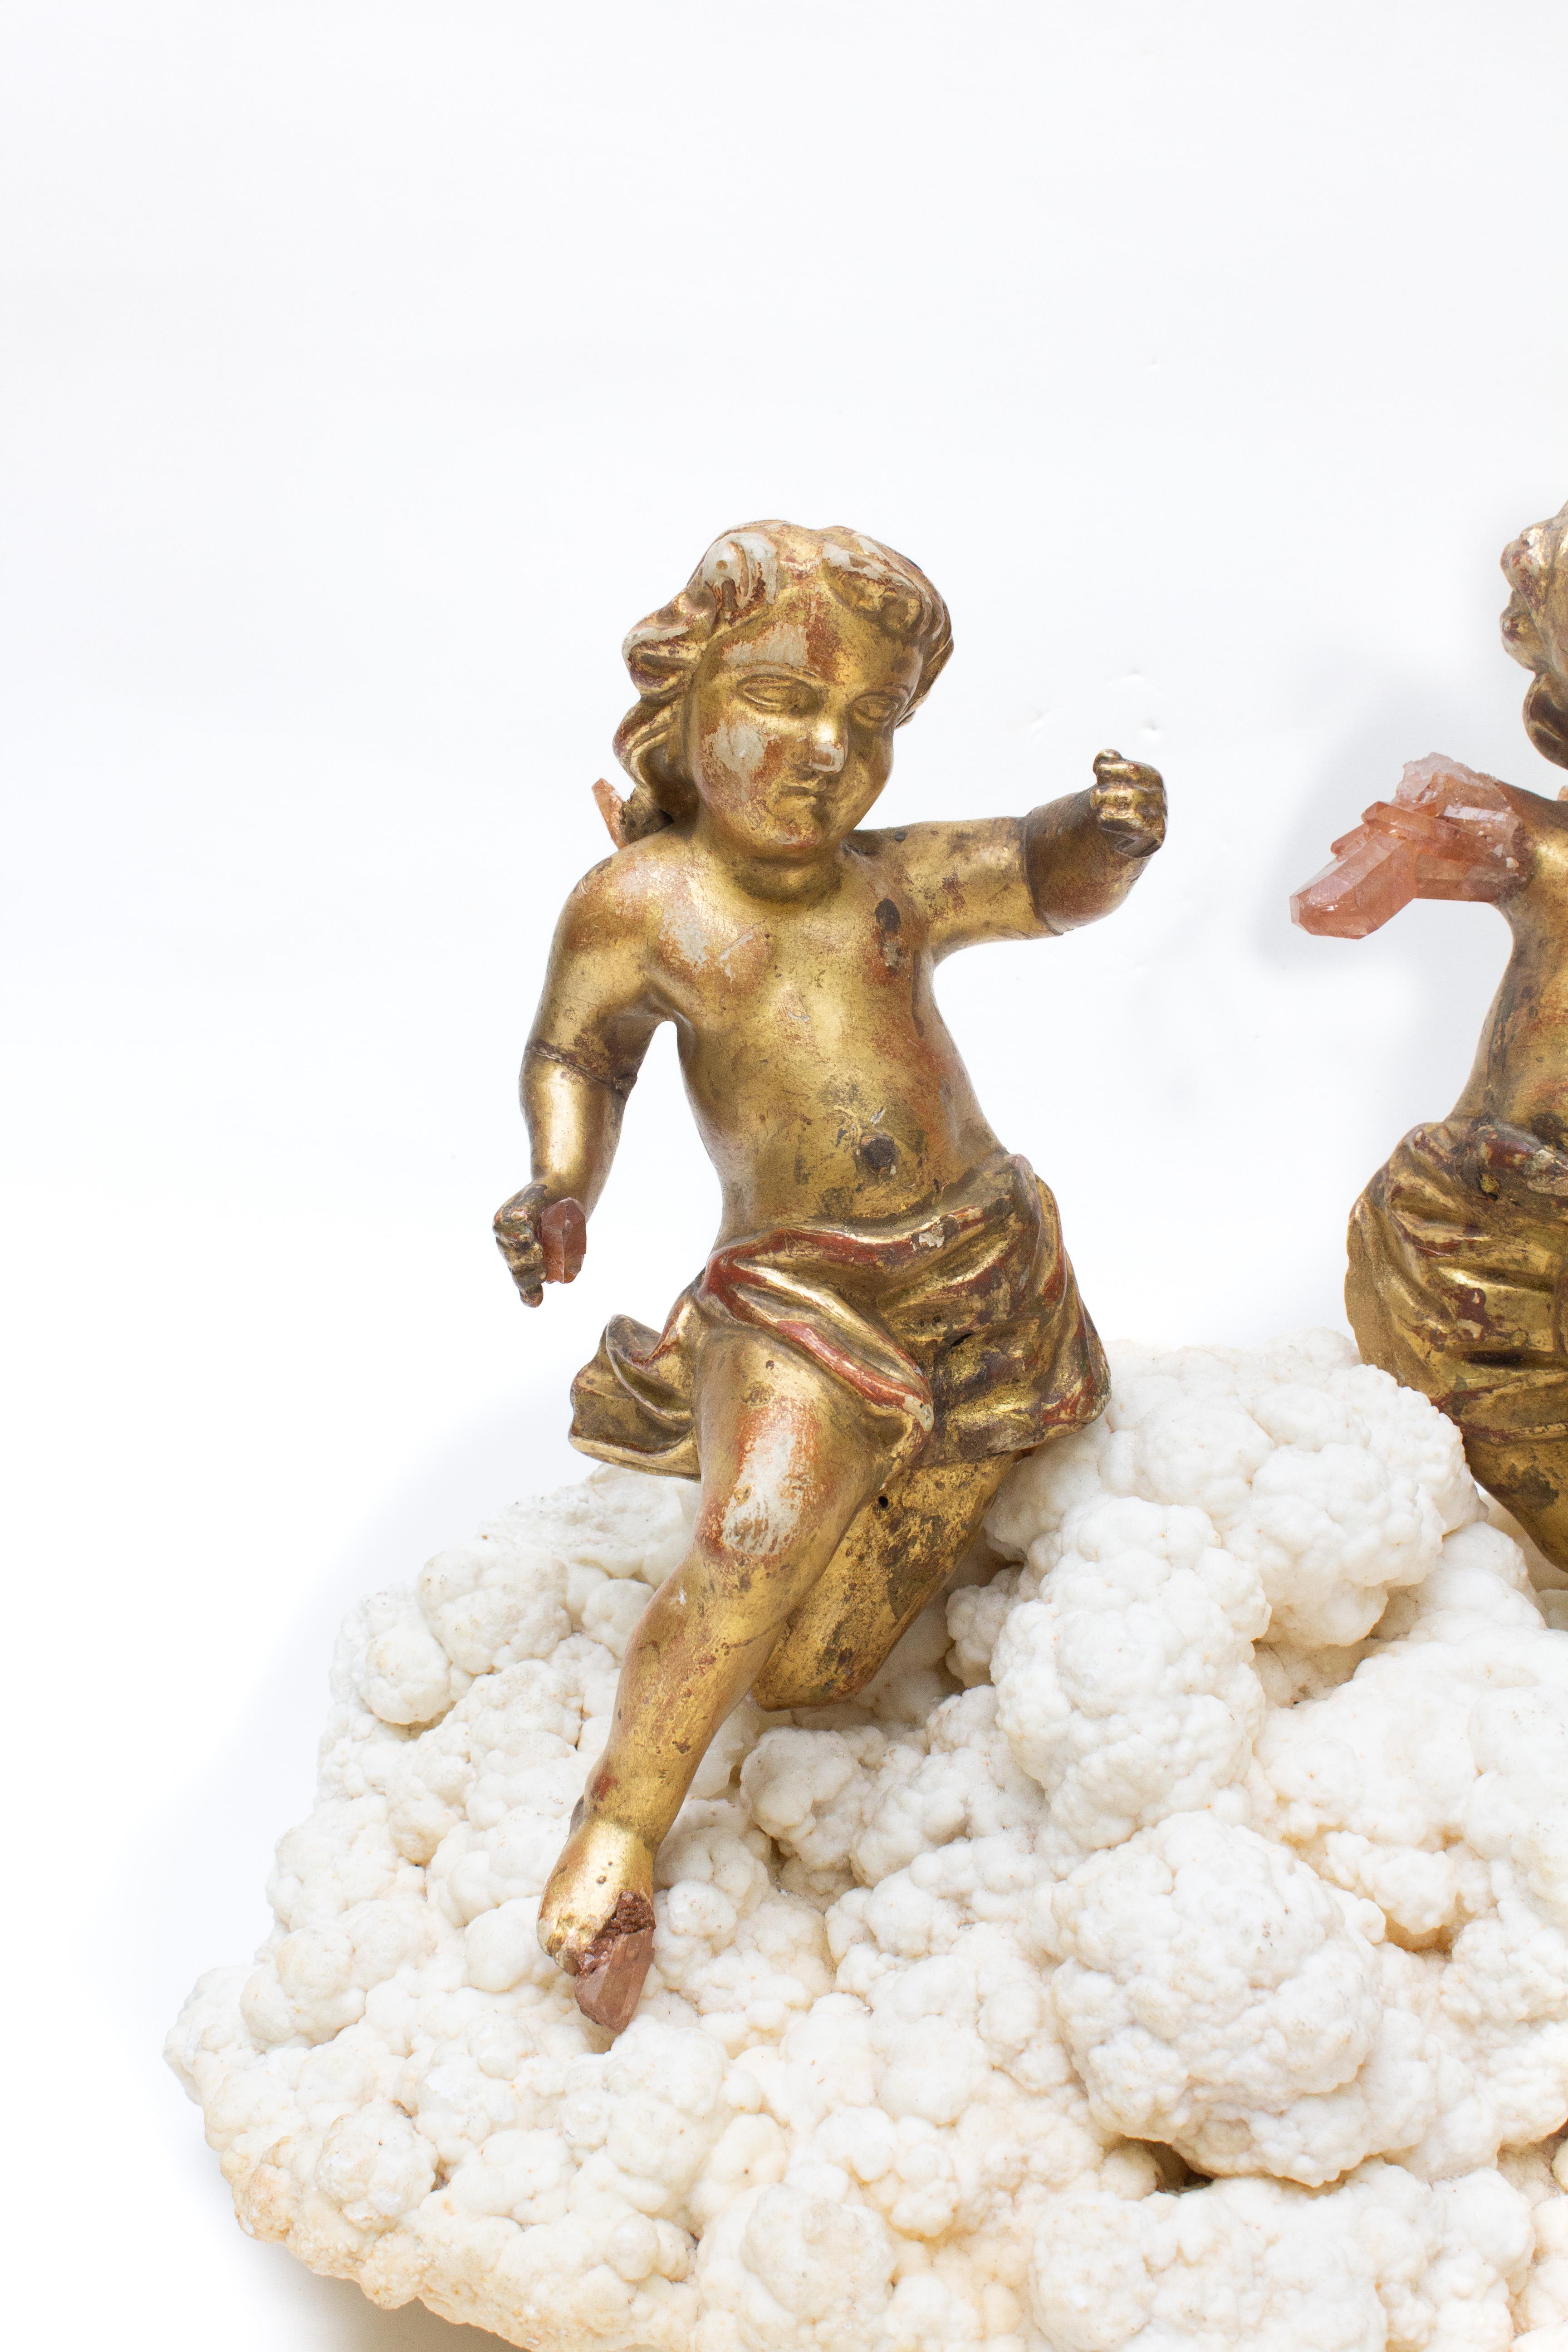 Paire d'anges italiens du XVIIIe siècle sculptés à la main à la feuille d'or avec des cristaux de quartz tangerine et montés sur de l'aragonite. Les anges sculptés à la main faisaient autrefois partie d'une représentation céleste et angélique dans